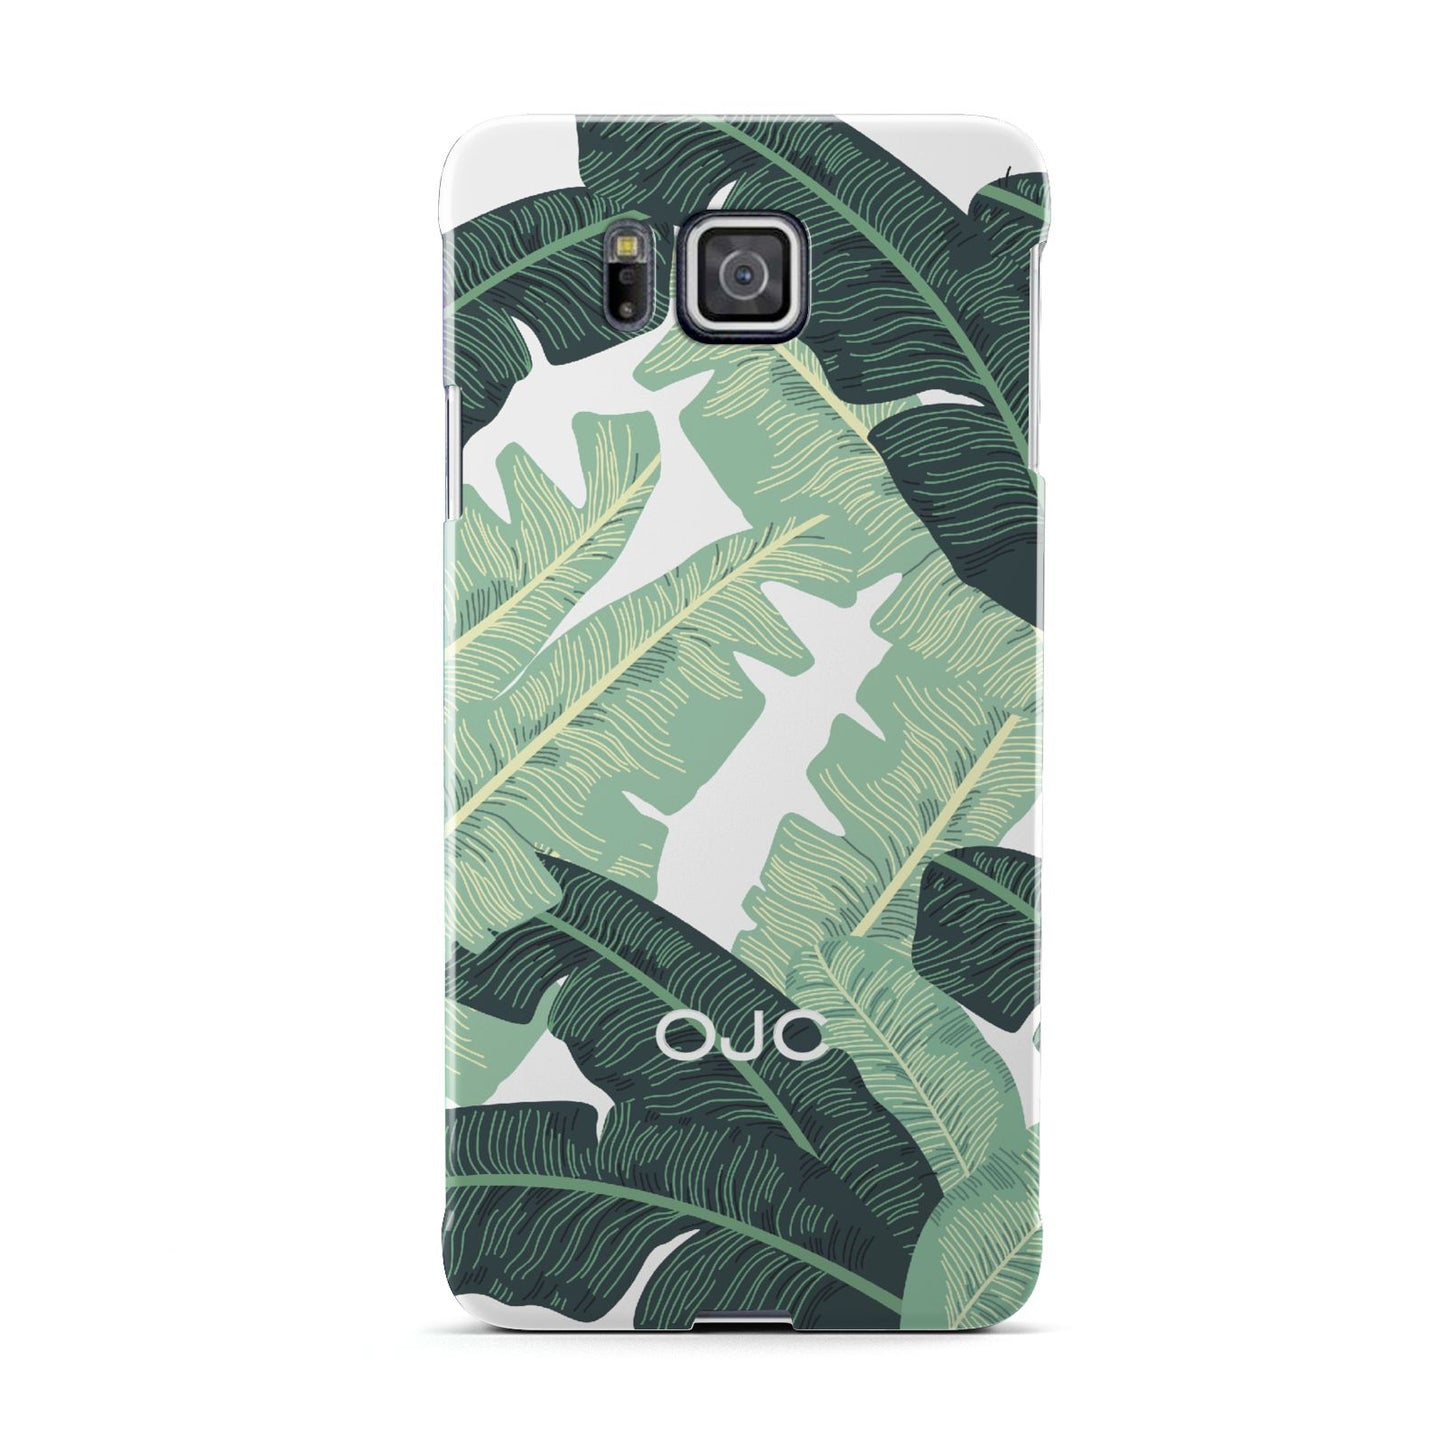 Personalised Palm Banana Leaf Samsung Galaxy Alpha Case